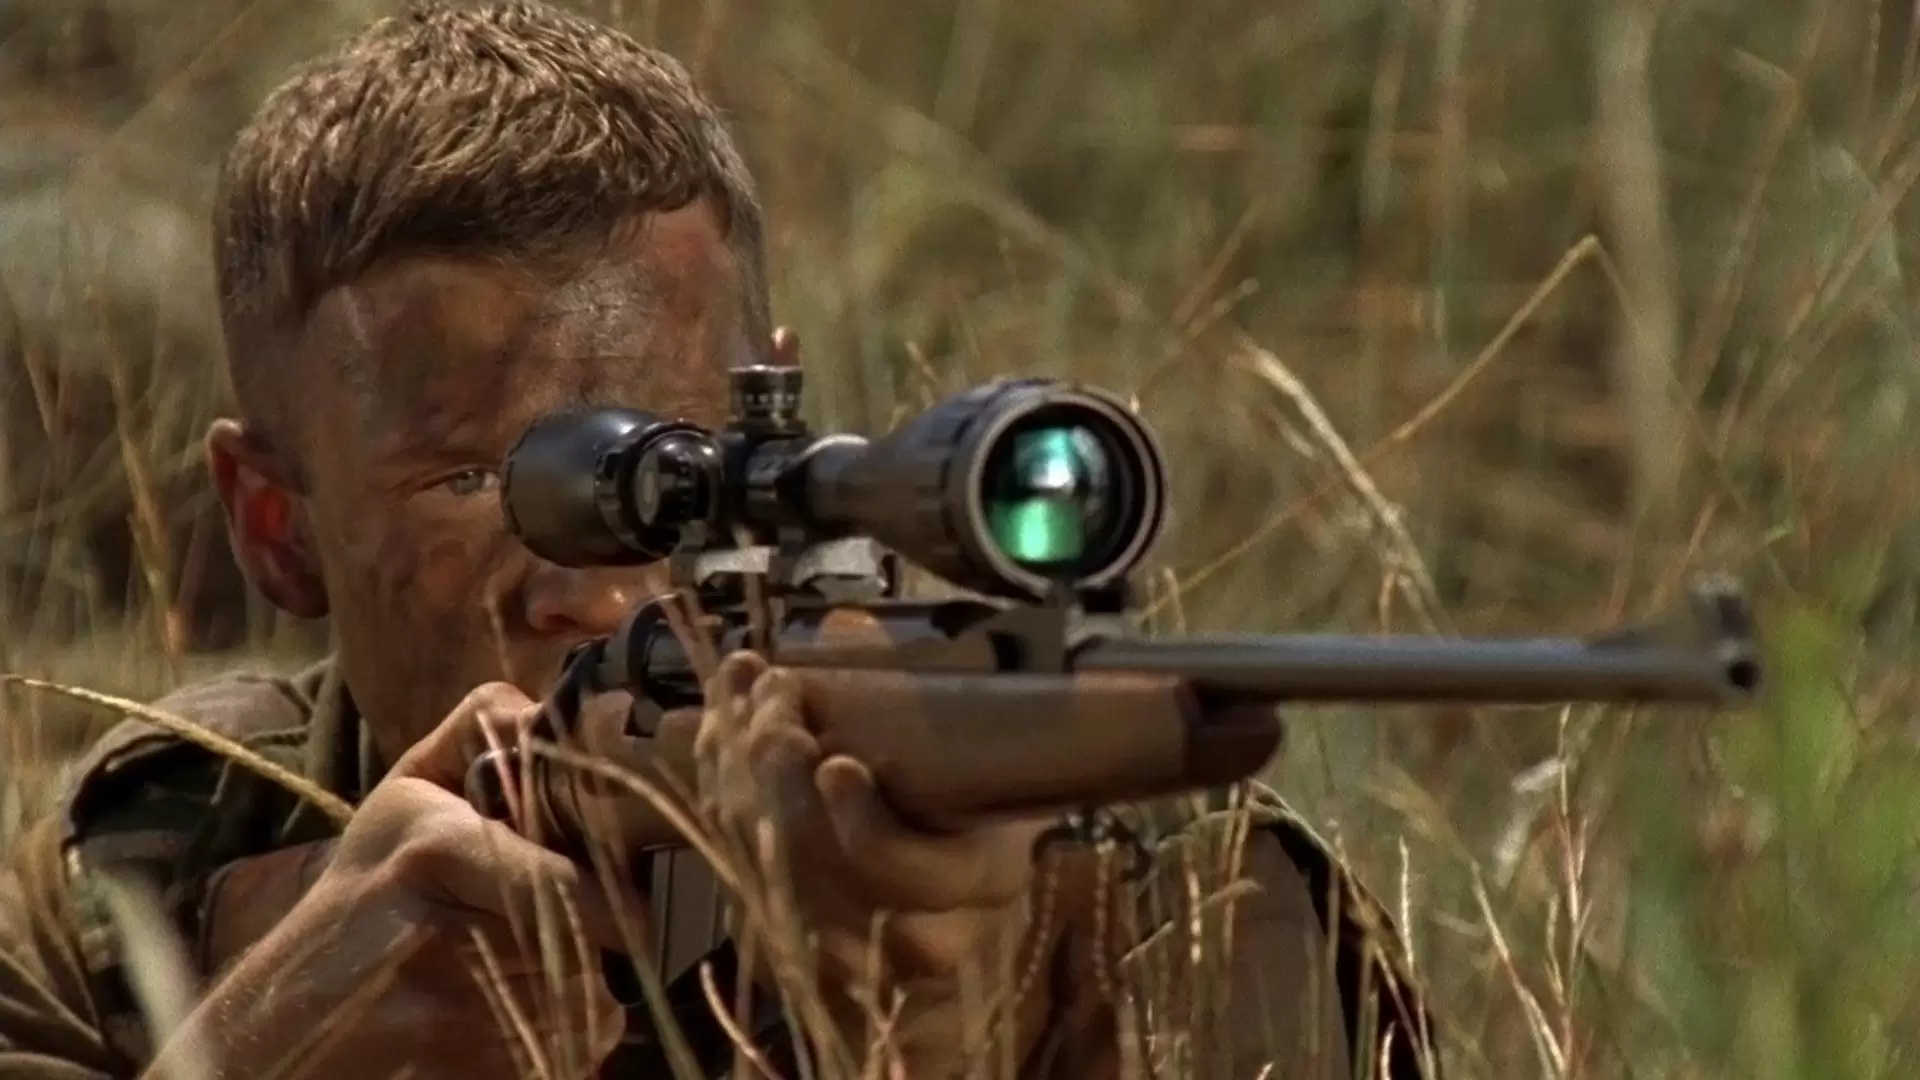 دانلود فیلم Sniper: Reloaded 2011 (تیر انداز: آماده شلیک) با زیرنویس فارسی